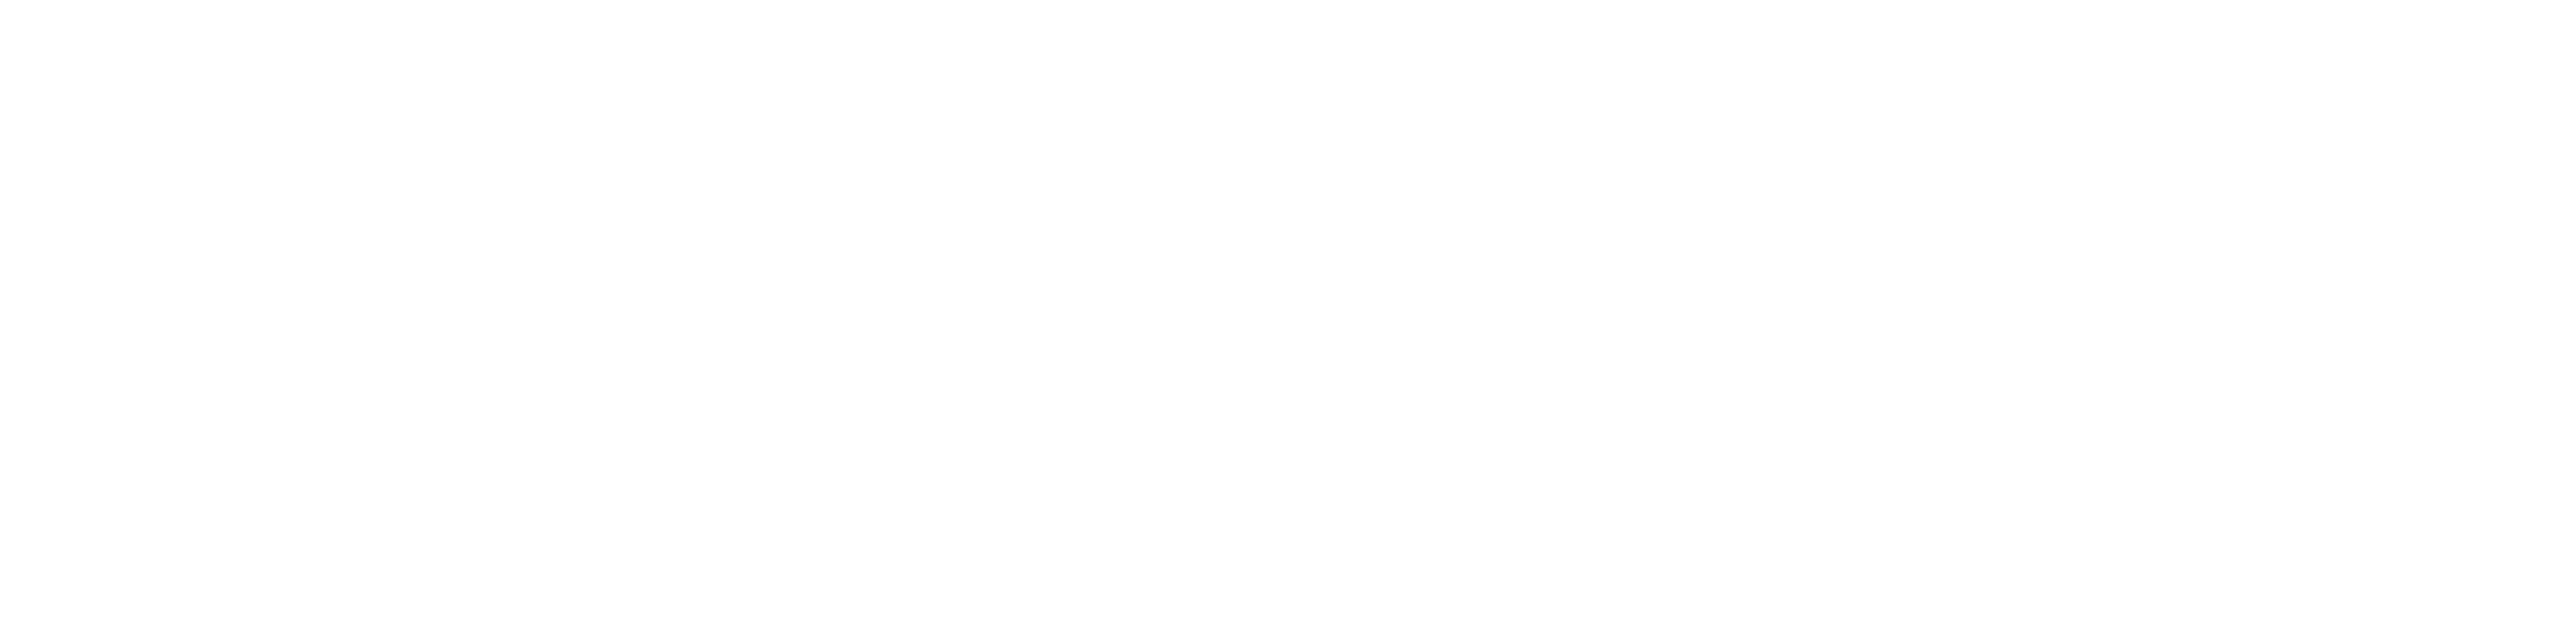 7º Tabelião de Protesto de Títulos de São Paulo